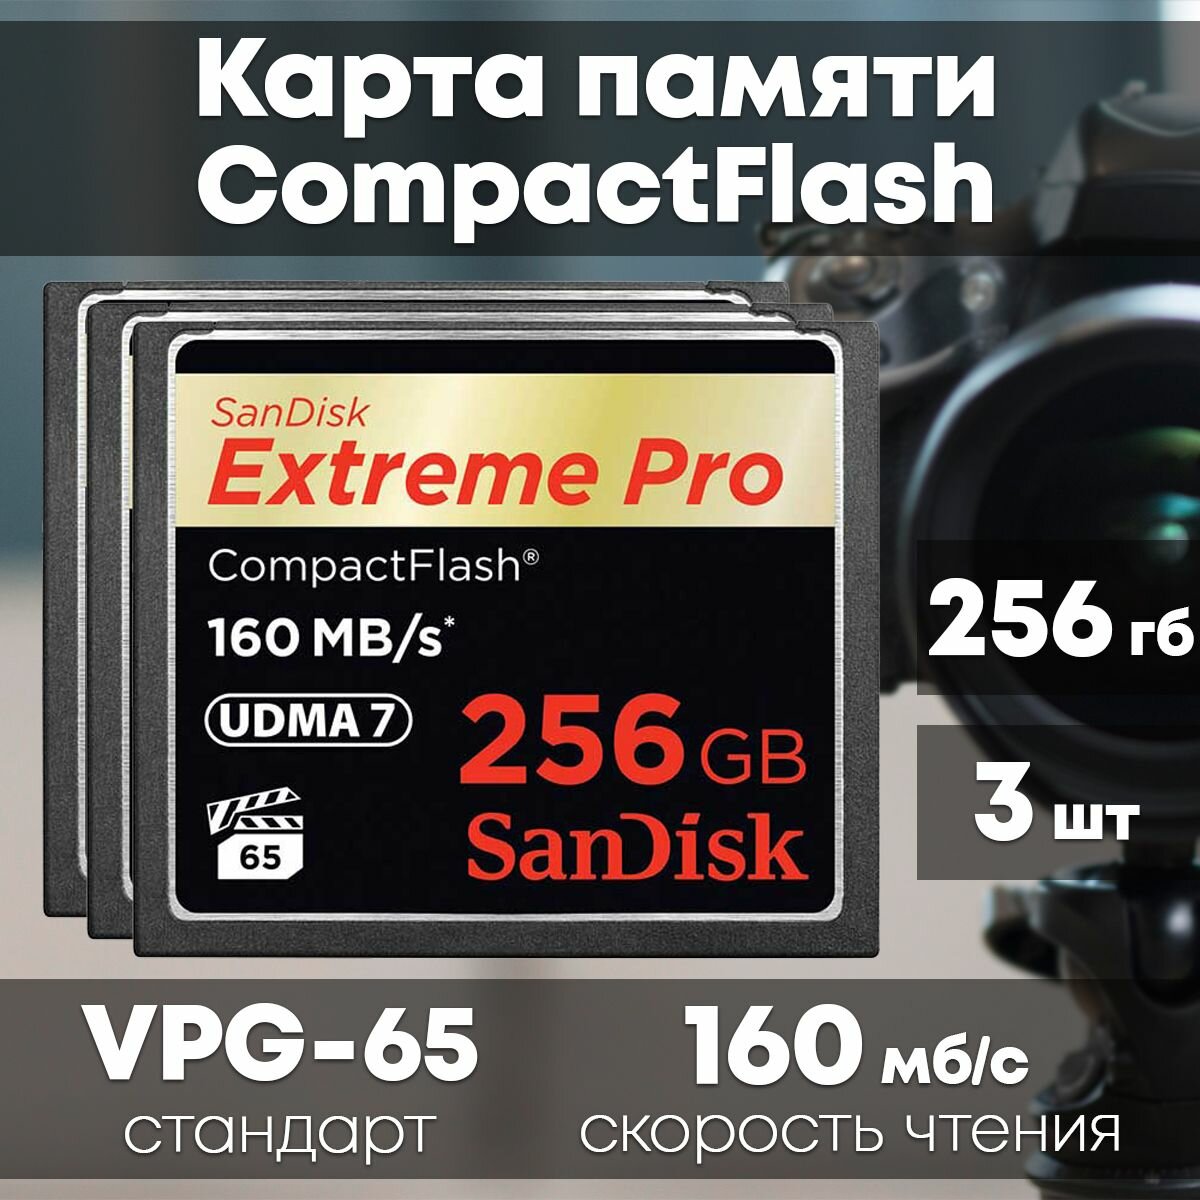 Карта памяти SanDisk Extreme PRO CompactFlash 256GB 3 шт.